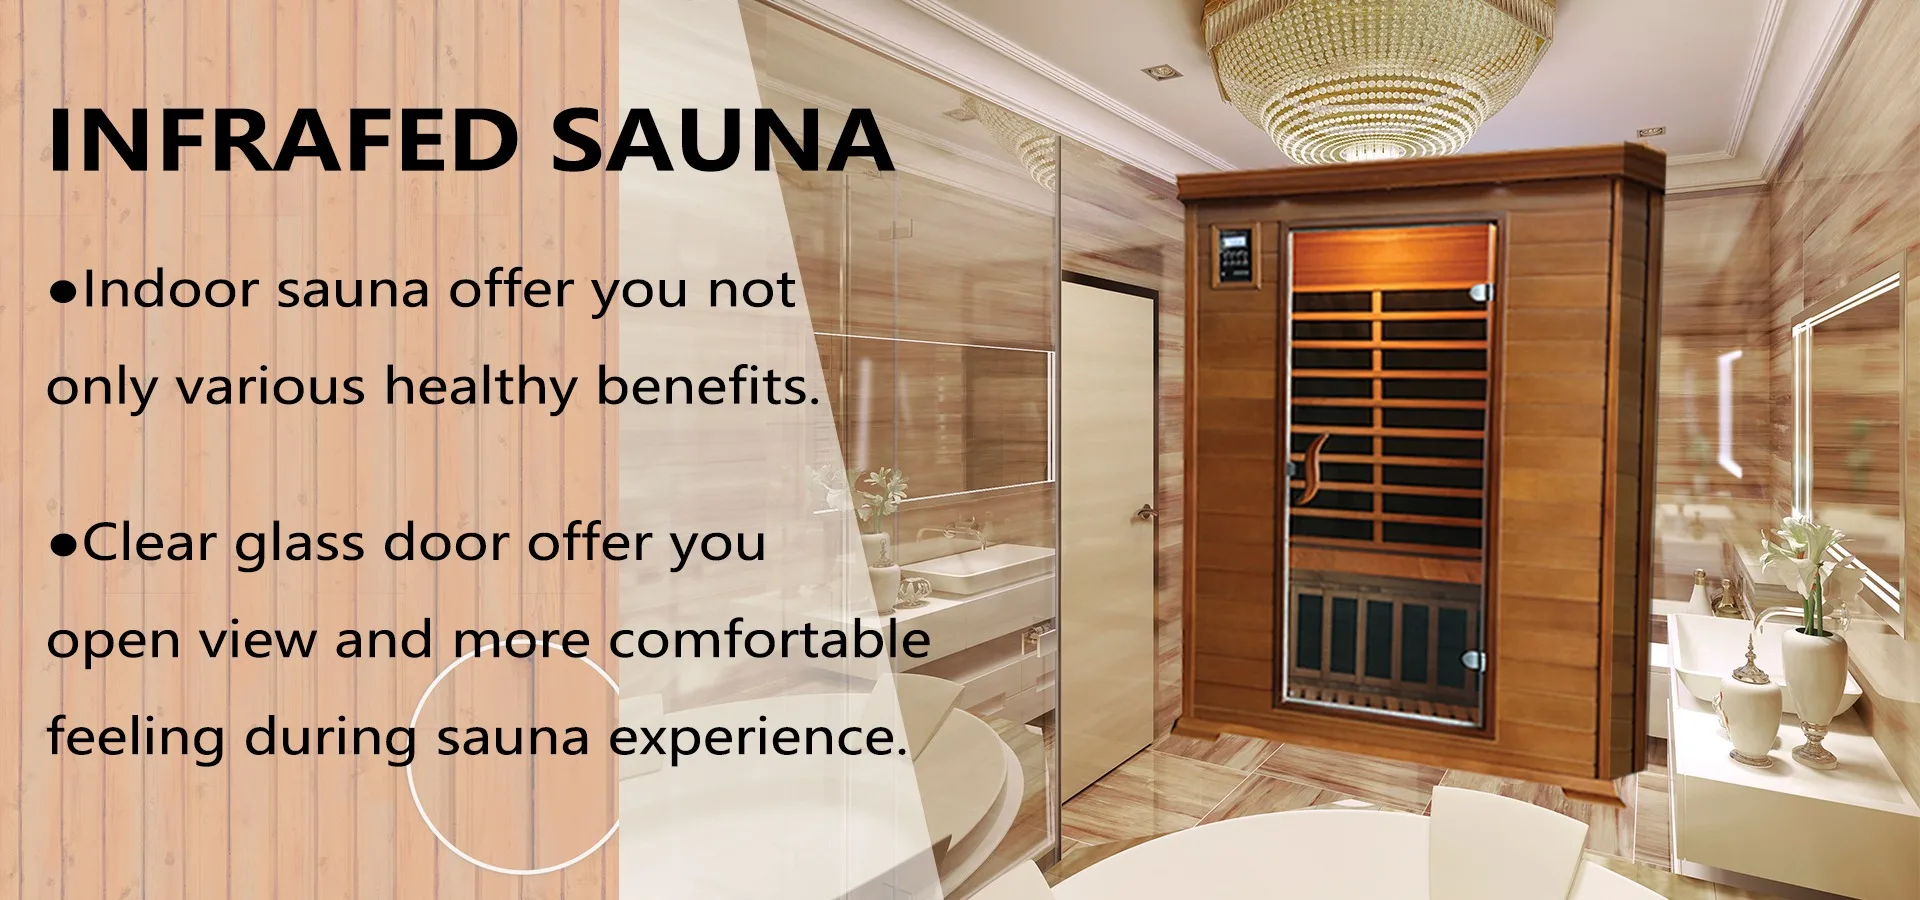 Sauna shanghai “Services” Available